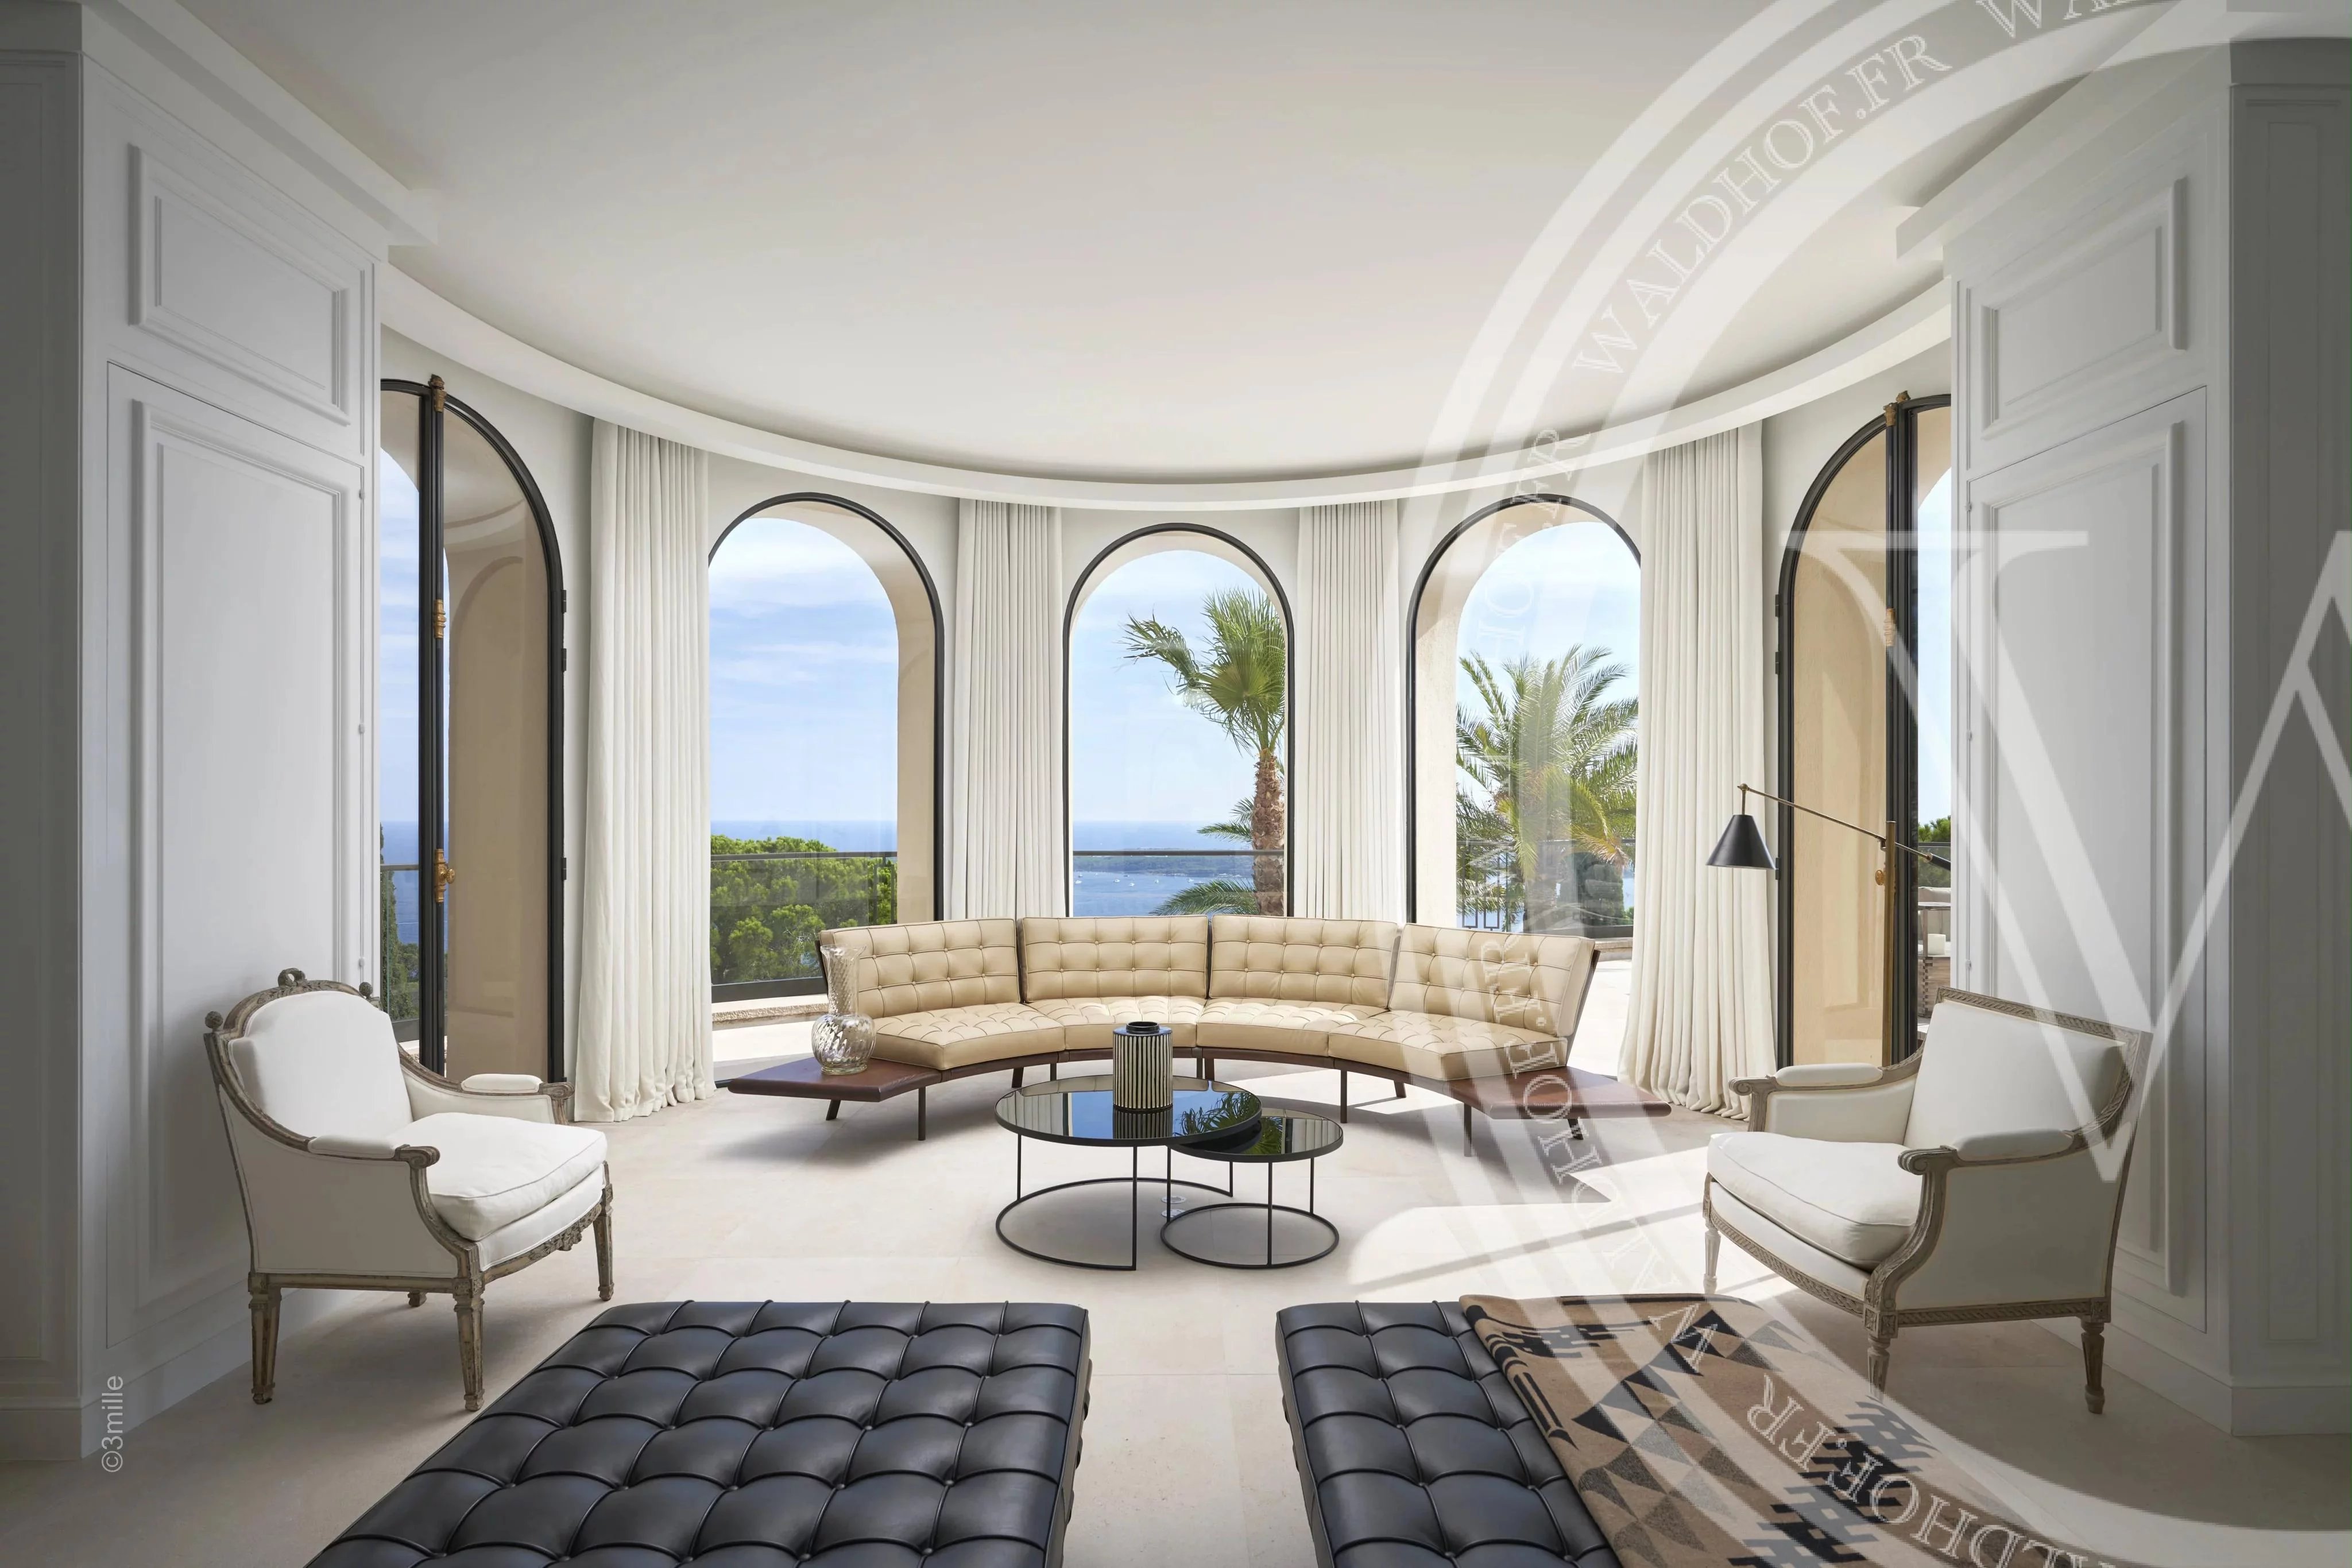 Palais de 2500 m² entièrement rénové surplombant toute la ville de Cannes